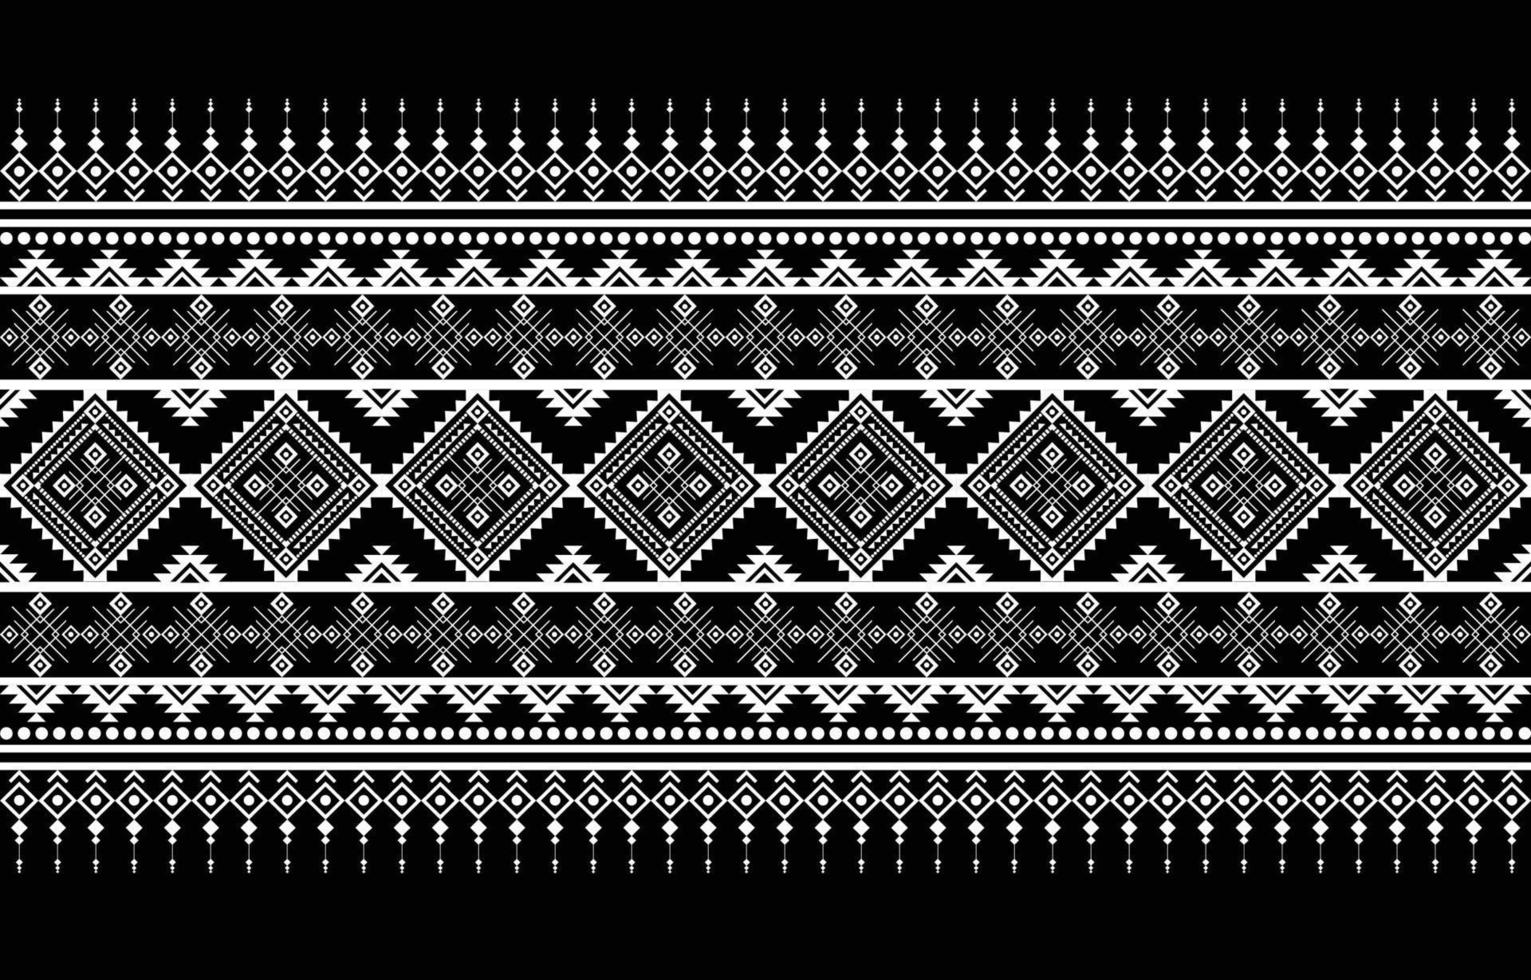 diseño de patrón de tela americana. use la geometría para crear un patrón de tela. diseño para la industria textil, fondo, moqueta, papel pintado, ropa, batik y tejido étnico. vector